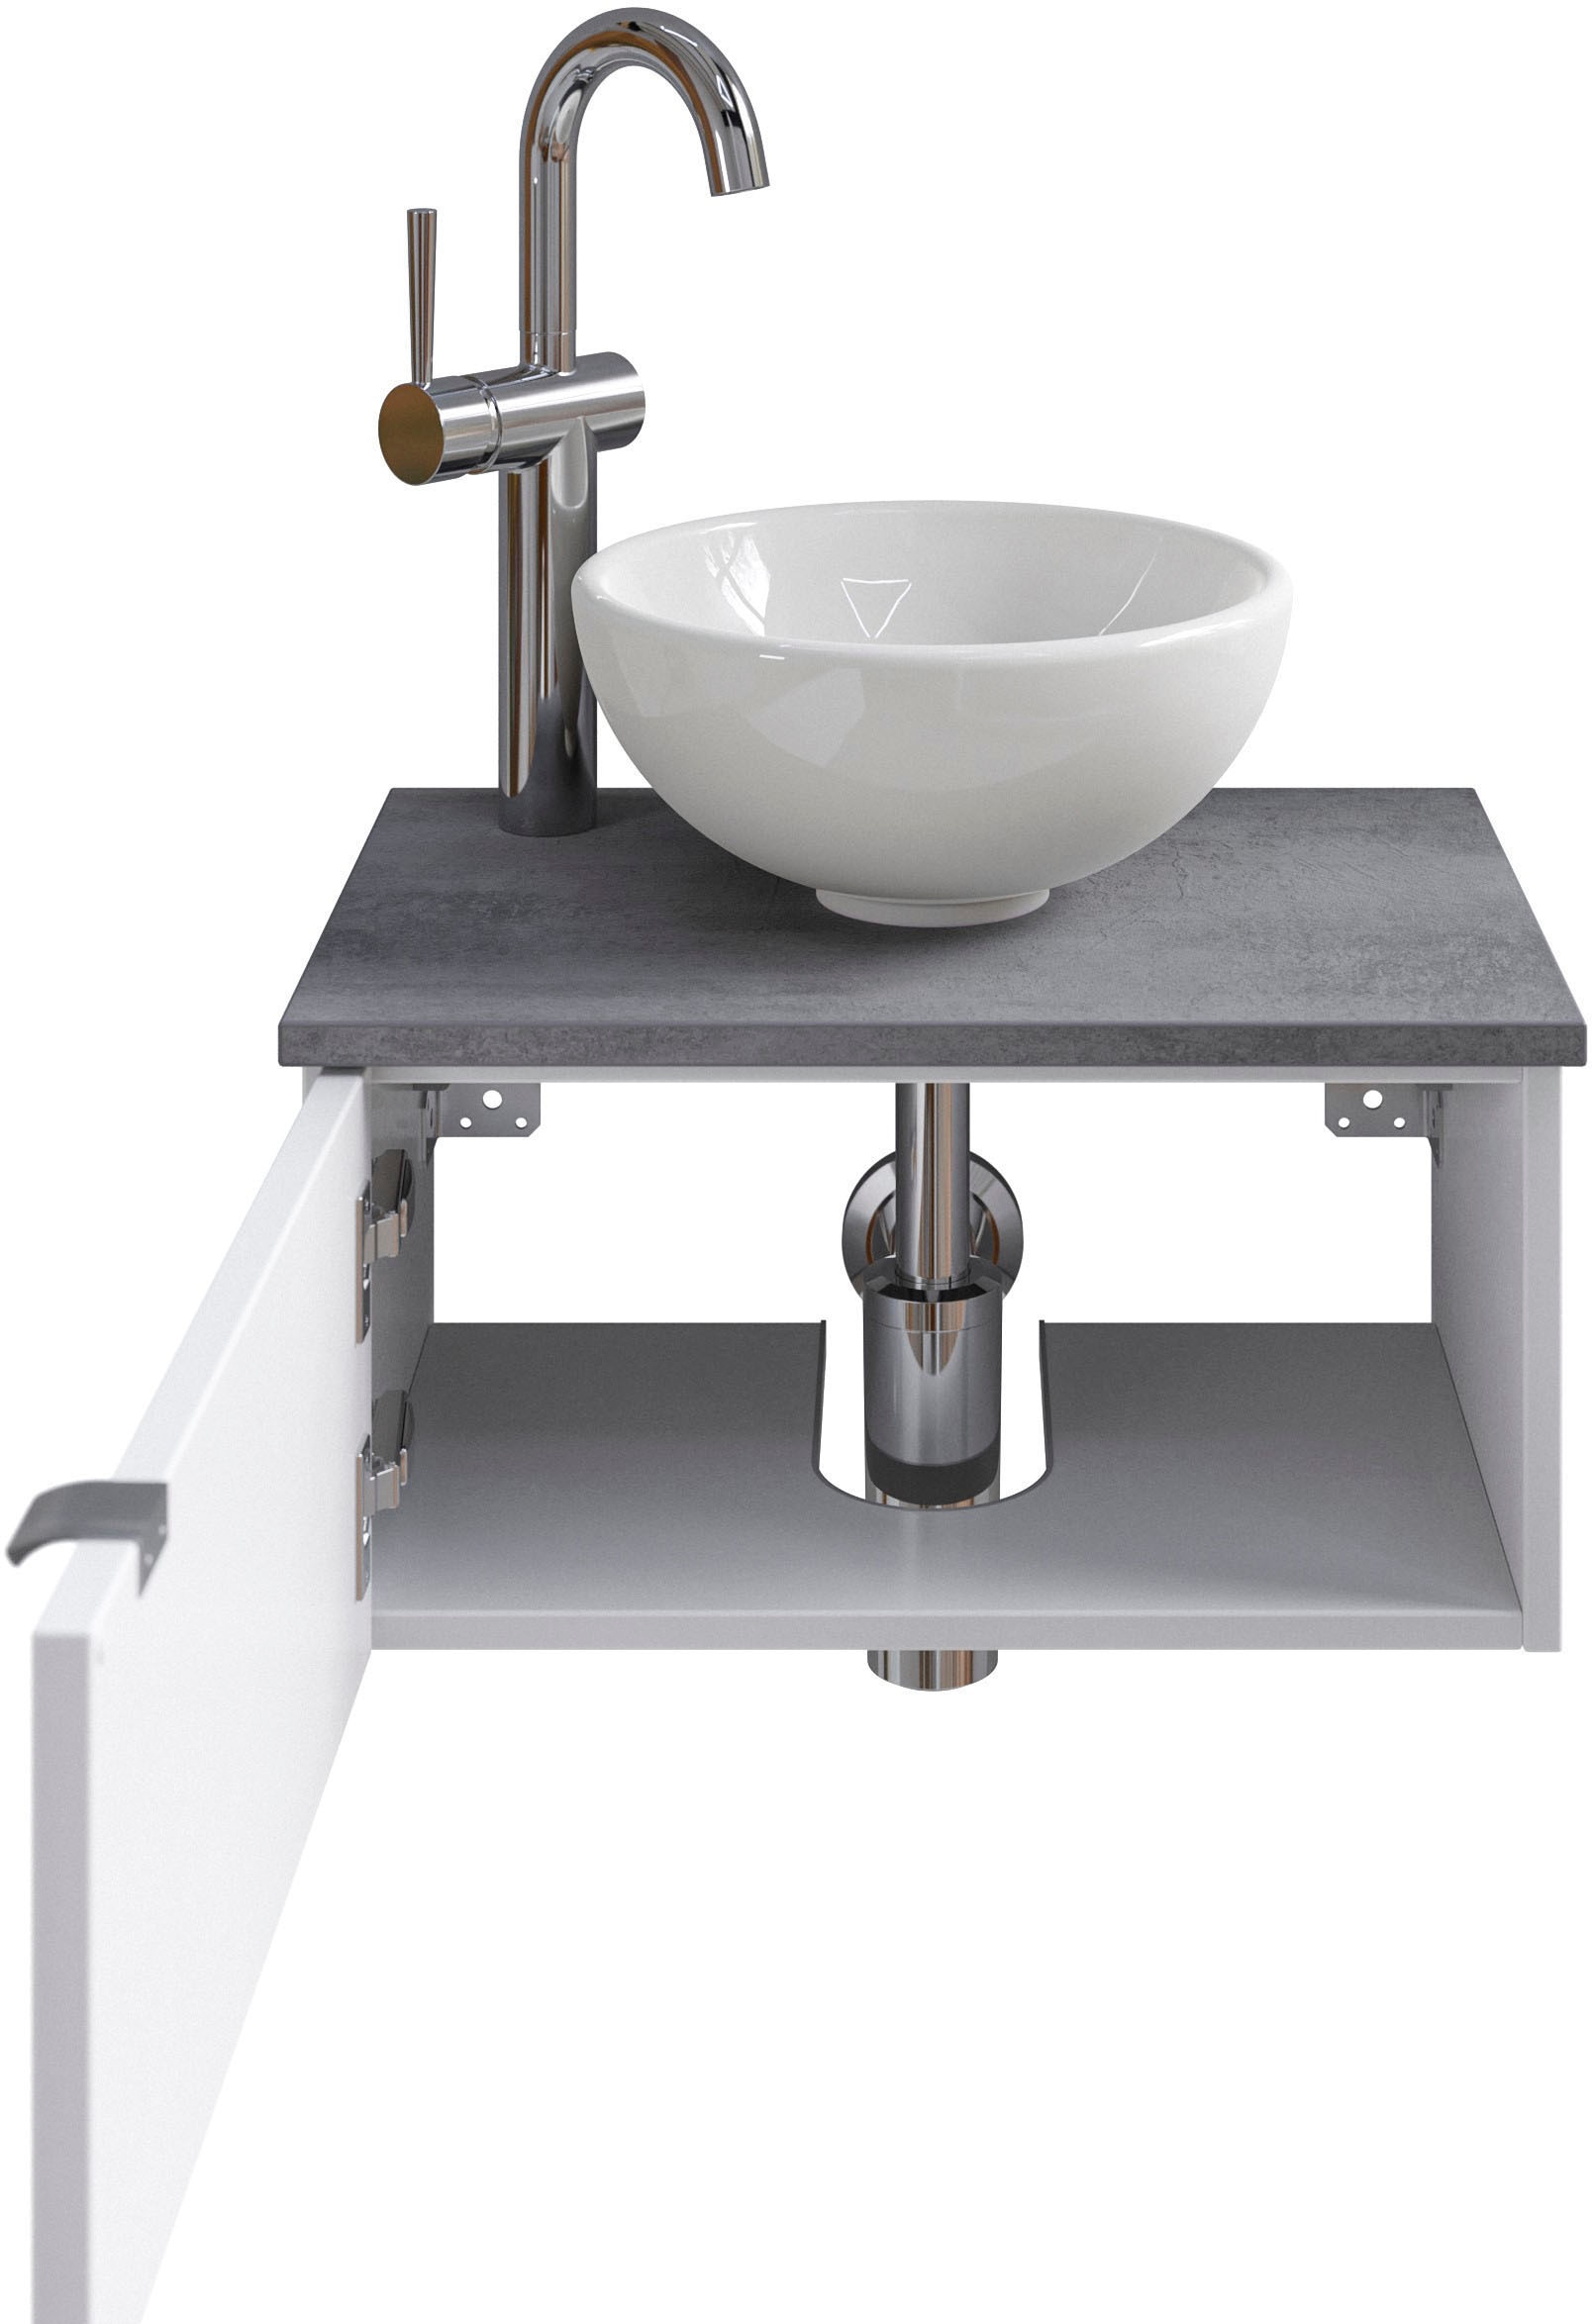 Saphir Waschtisch »Serie 6915 Waschschale mit Unterschrank für Gästebad, Gäste WC«, 51 cm breit, 1 Tür, Waschtischplatte, kleine Bäder, ohne Armatur